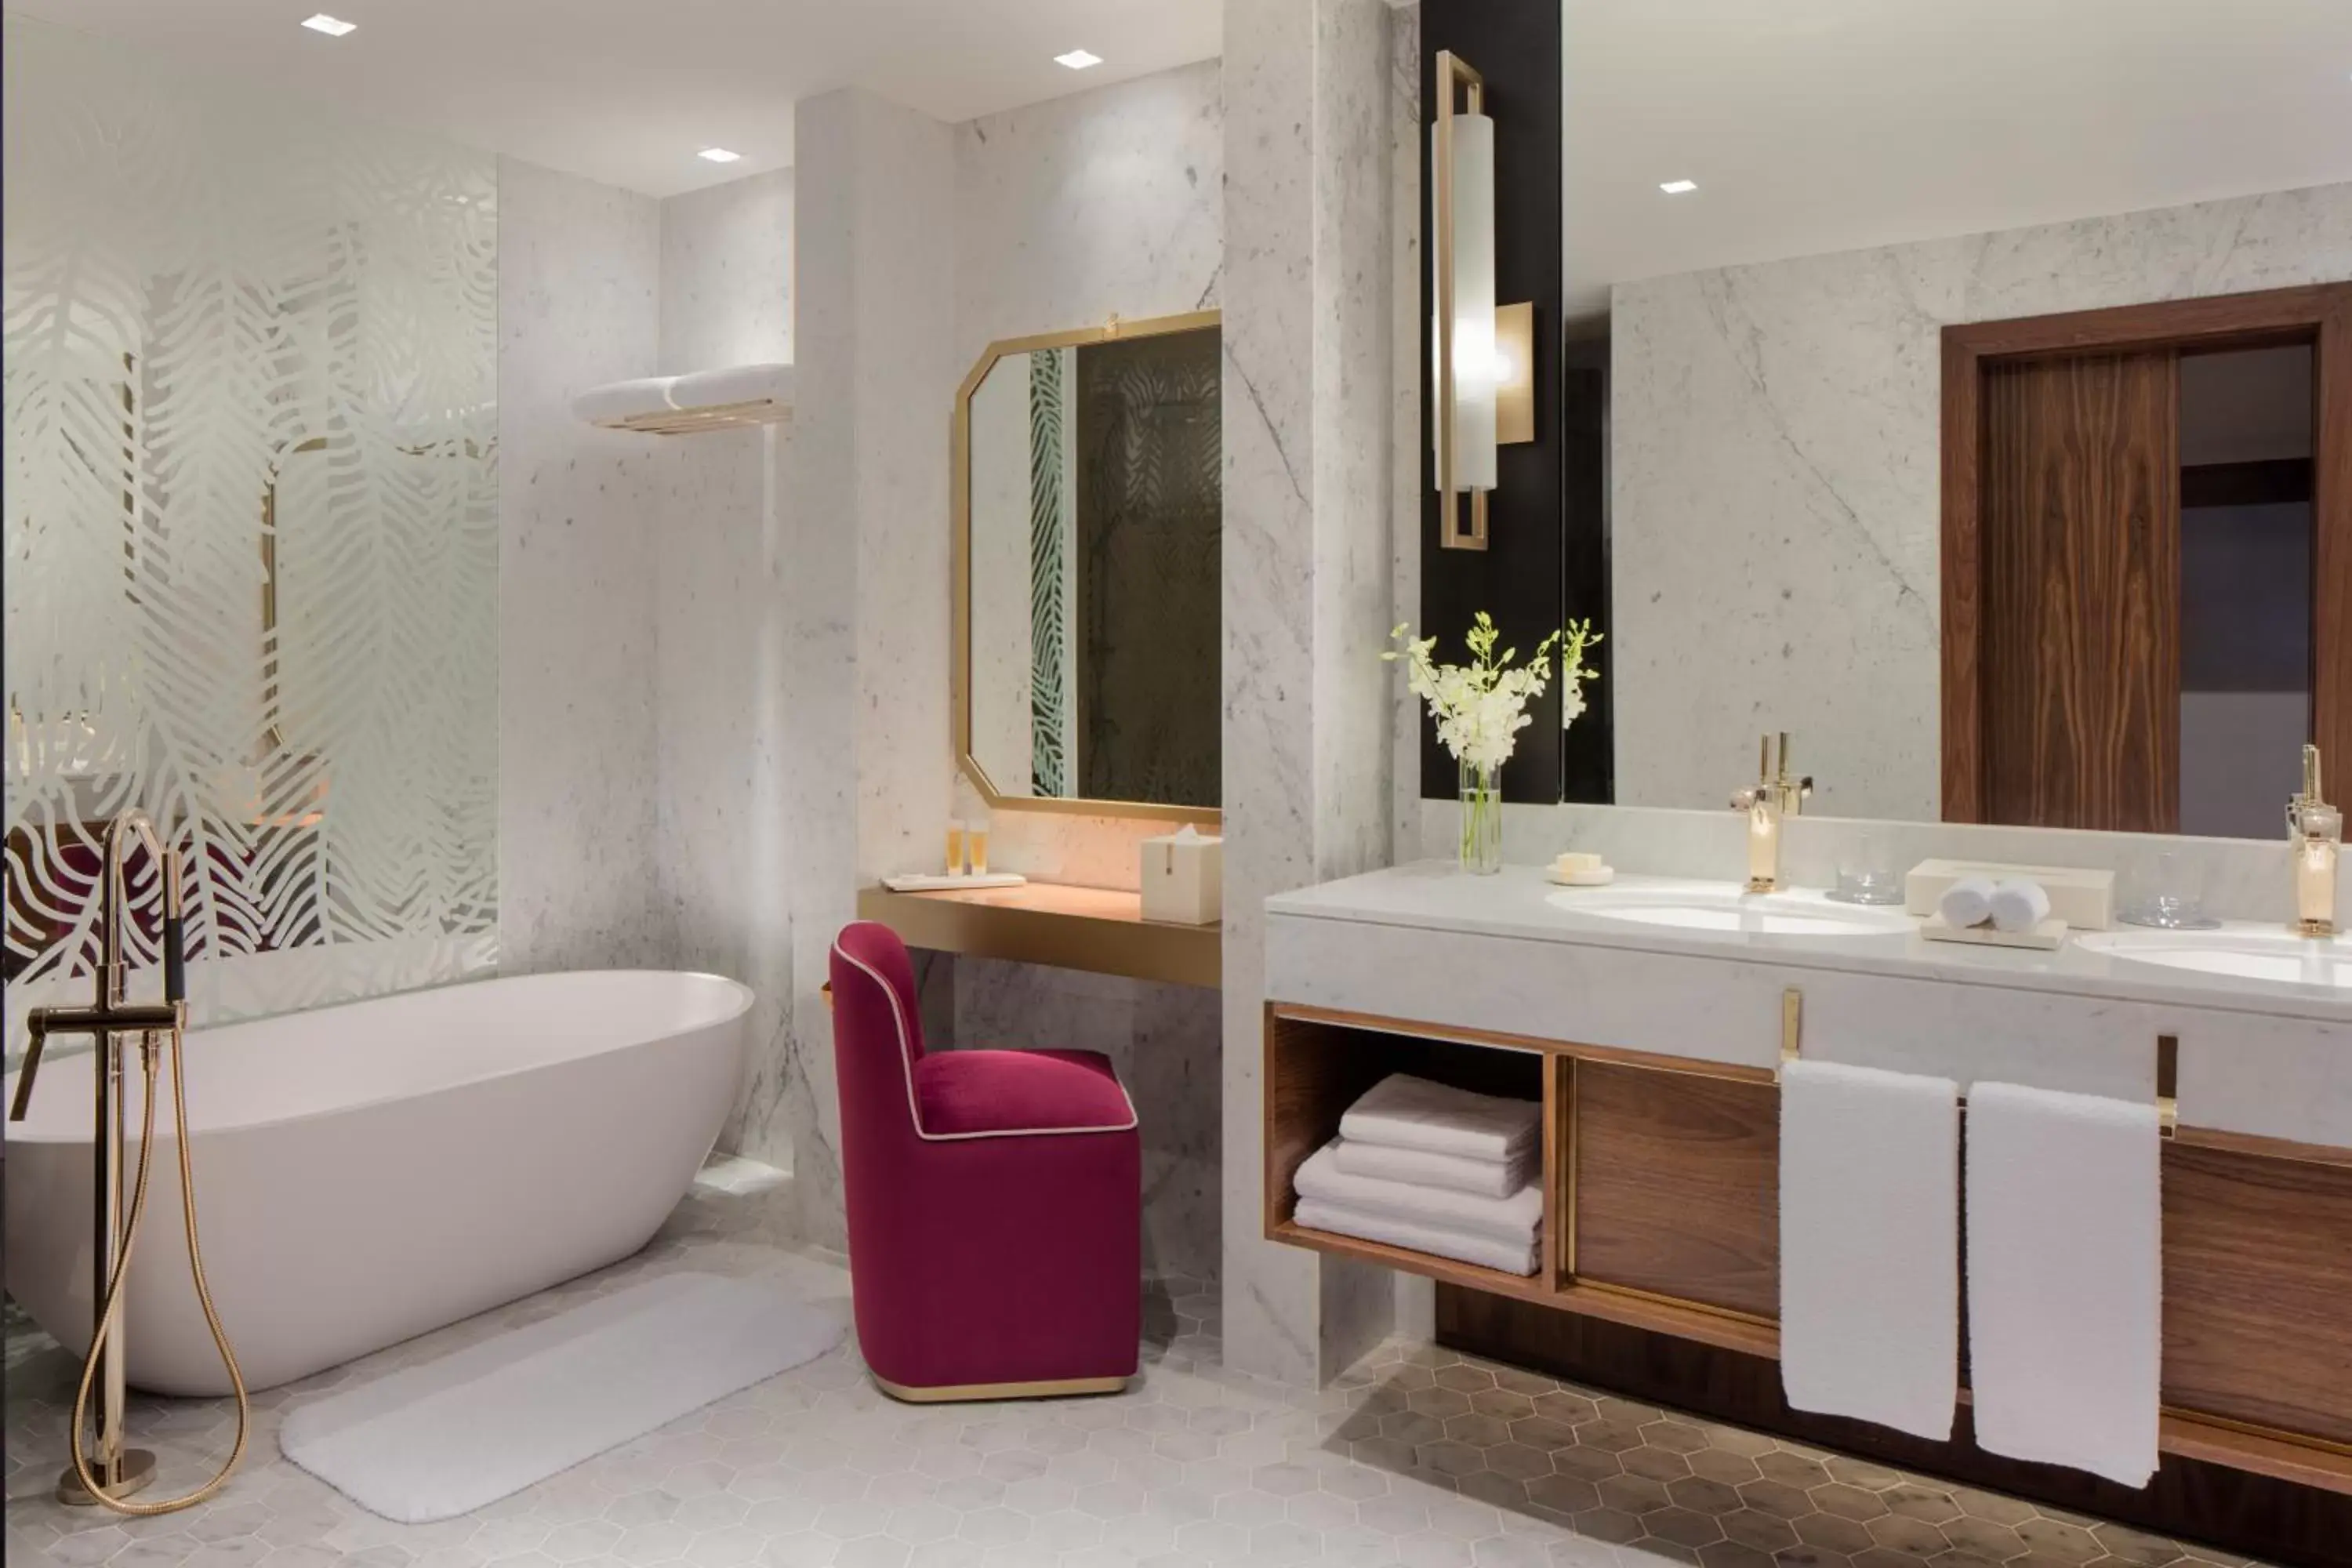 One-Bedroom Grand Suite with Garden View in Grand Hyatt Dubai